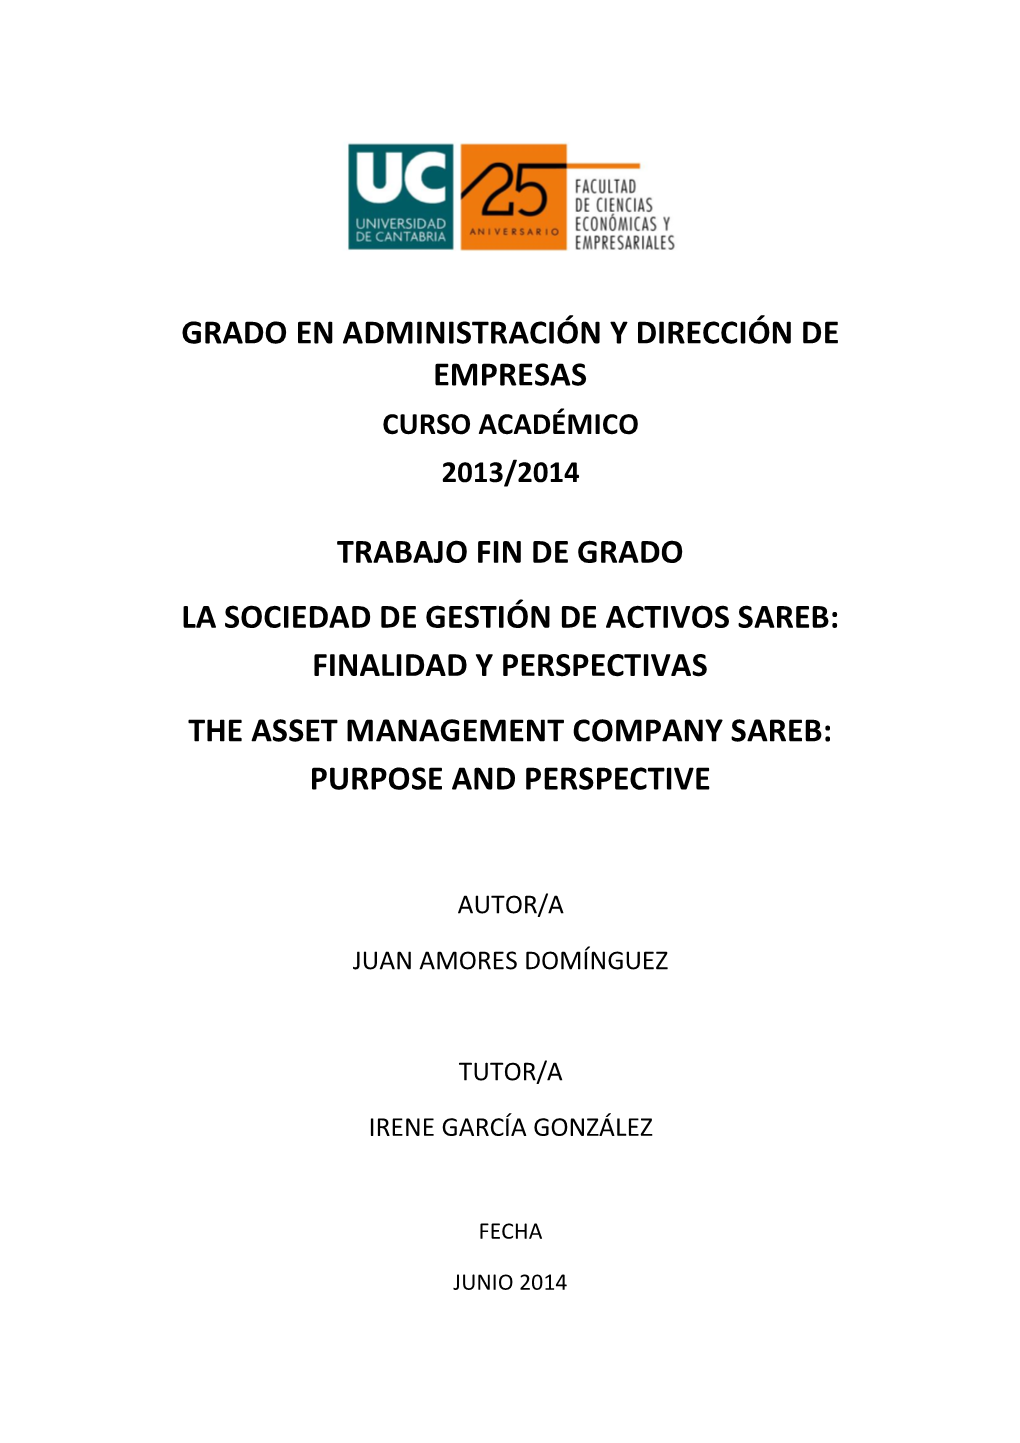 La Sociedad De Gestión De Activos Sareb: Finalidad Y Perspectivas the Asset Management Company Sareb: Purpose and Perspective